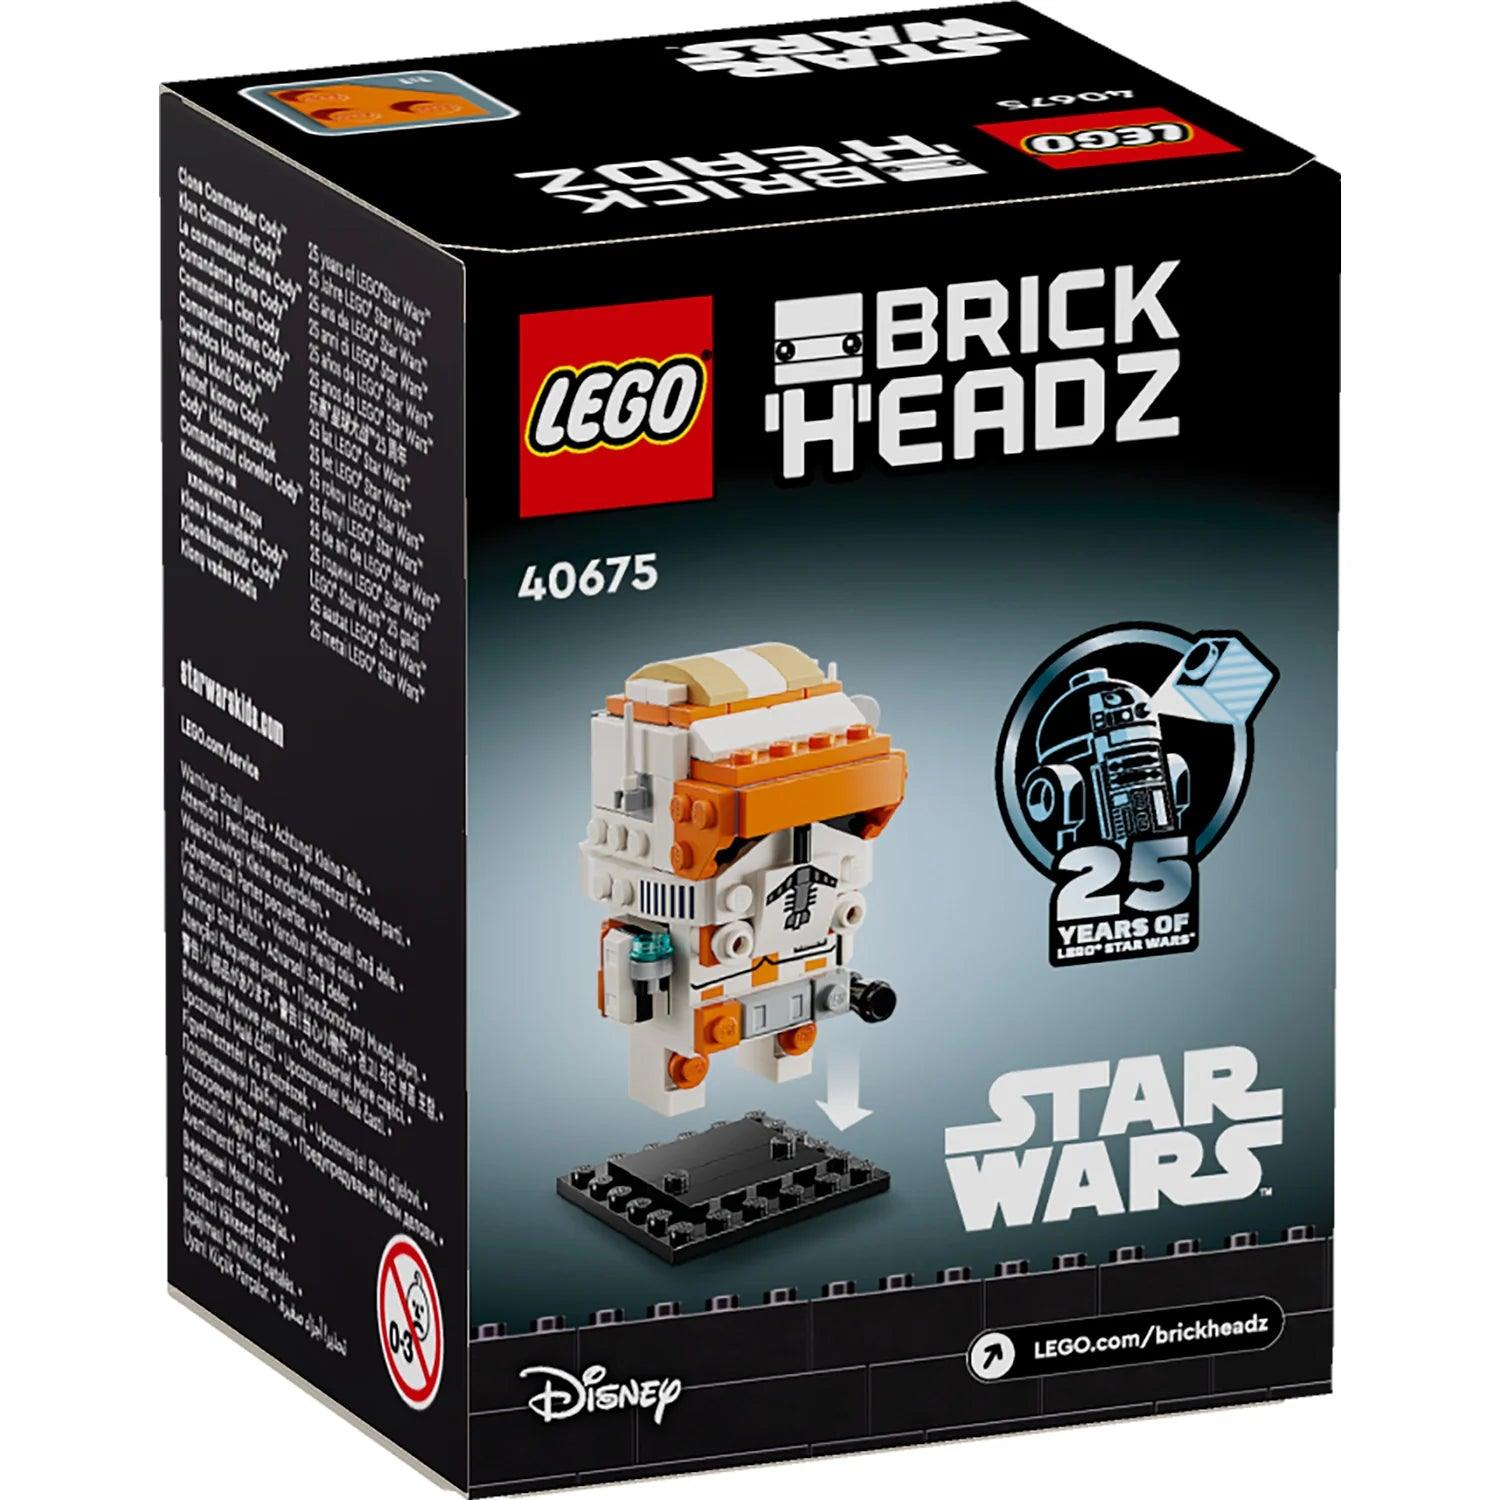 LEGO Clone Commander Cody 40675 StarWars @ 2TTOYS 2TTOYS €. 9.99